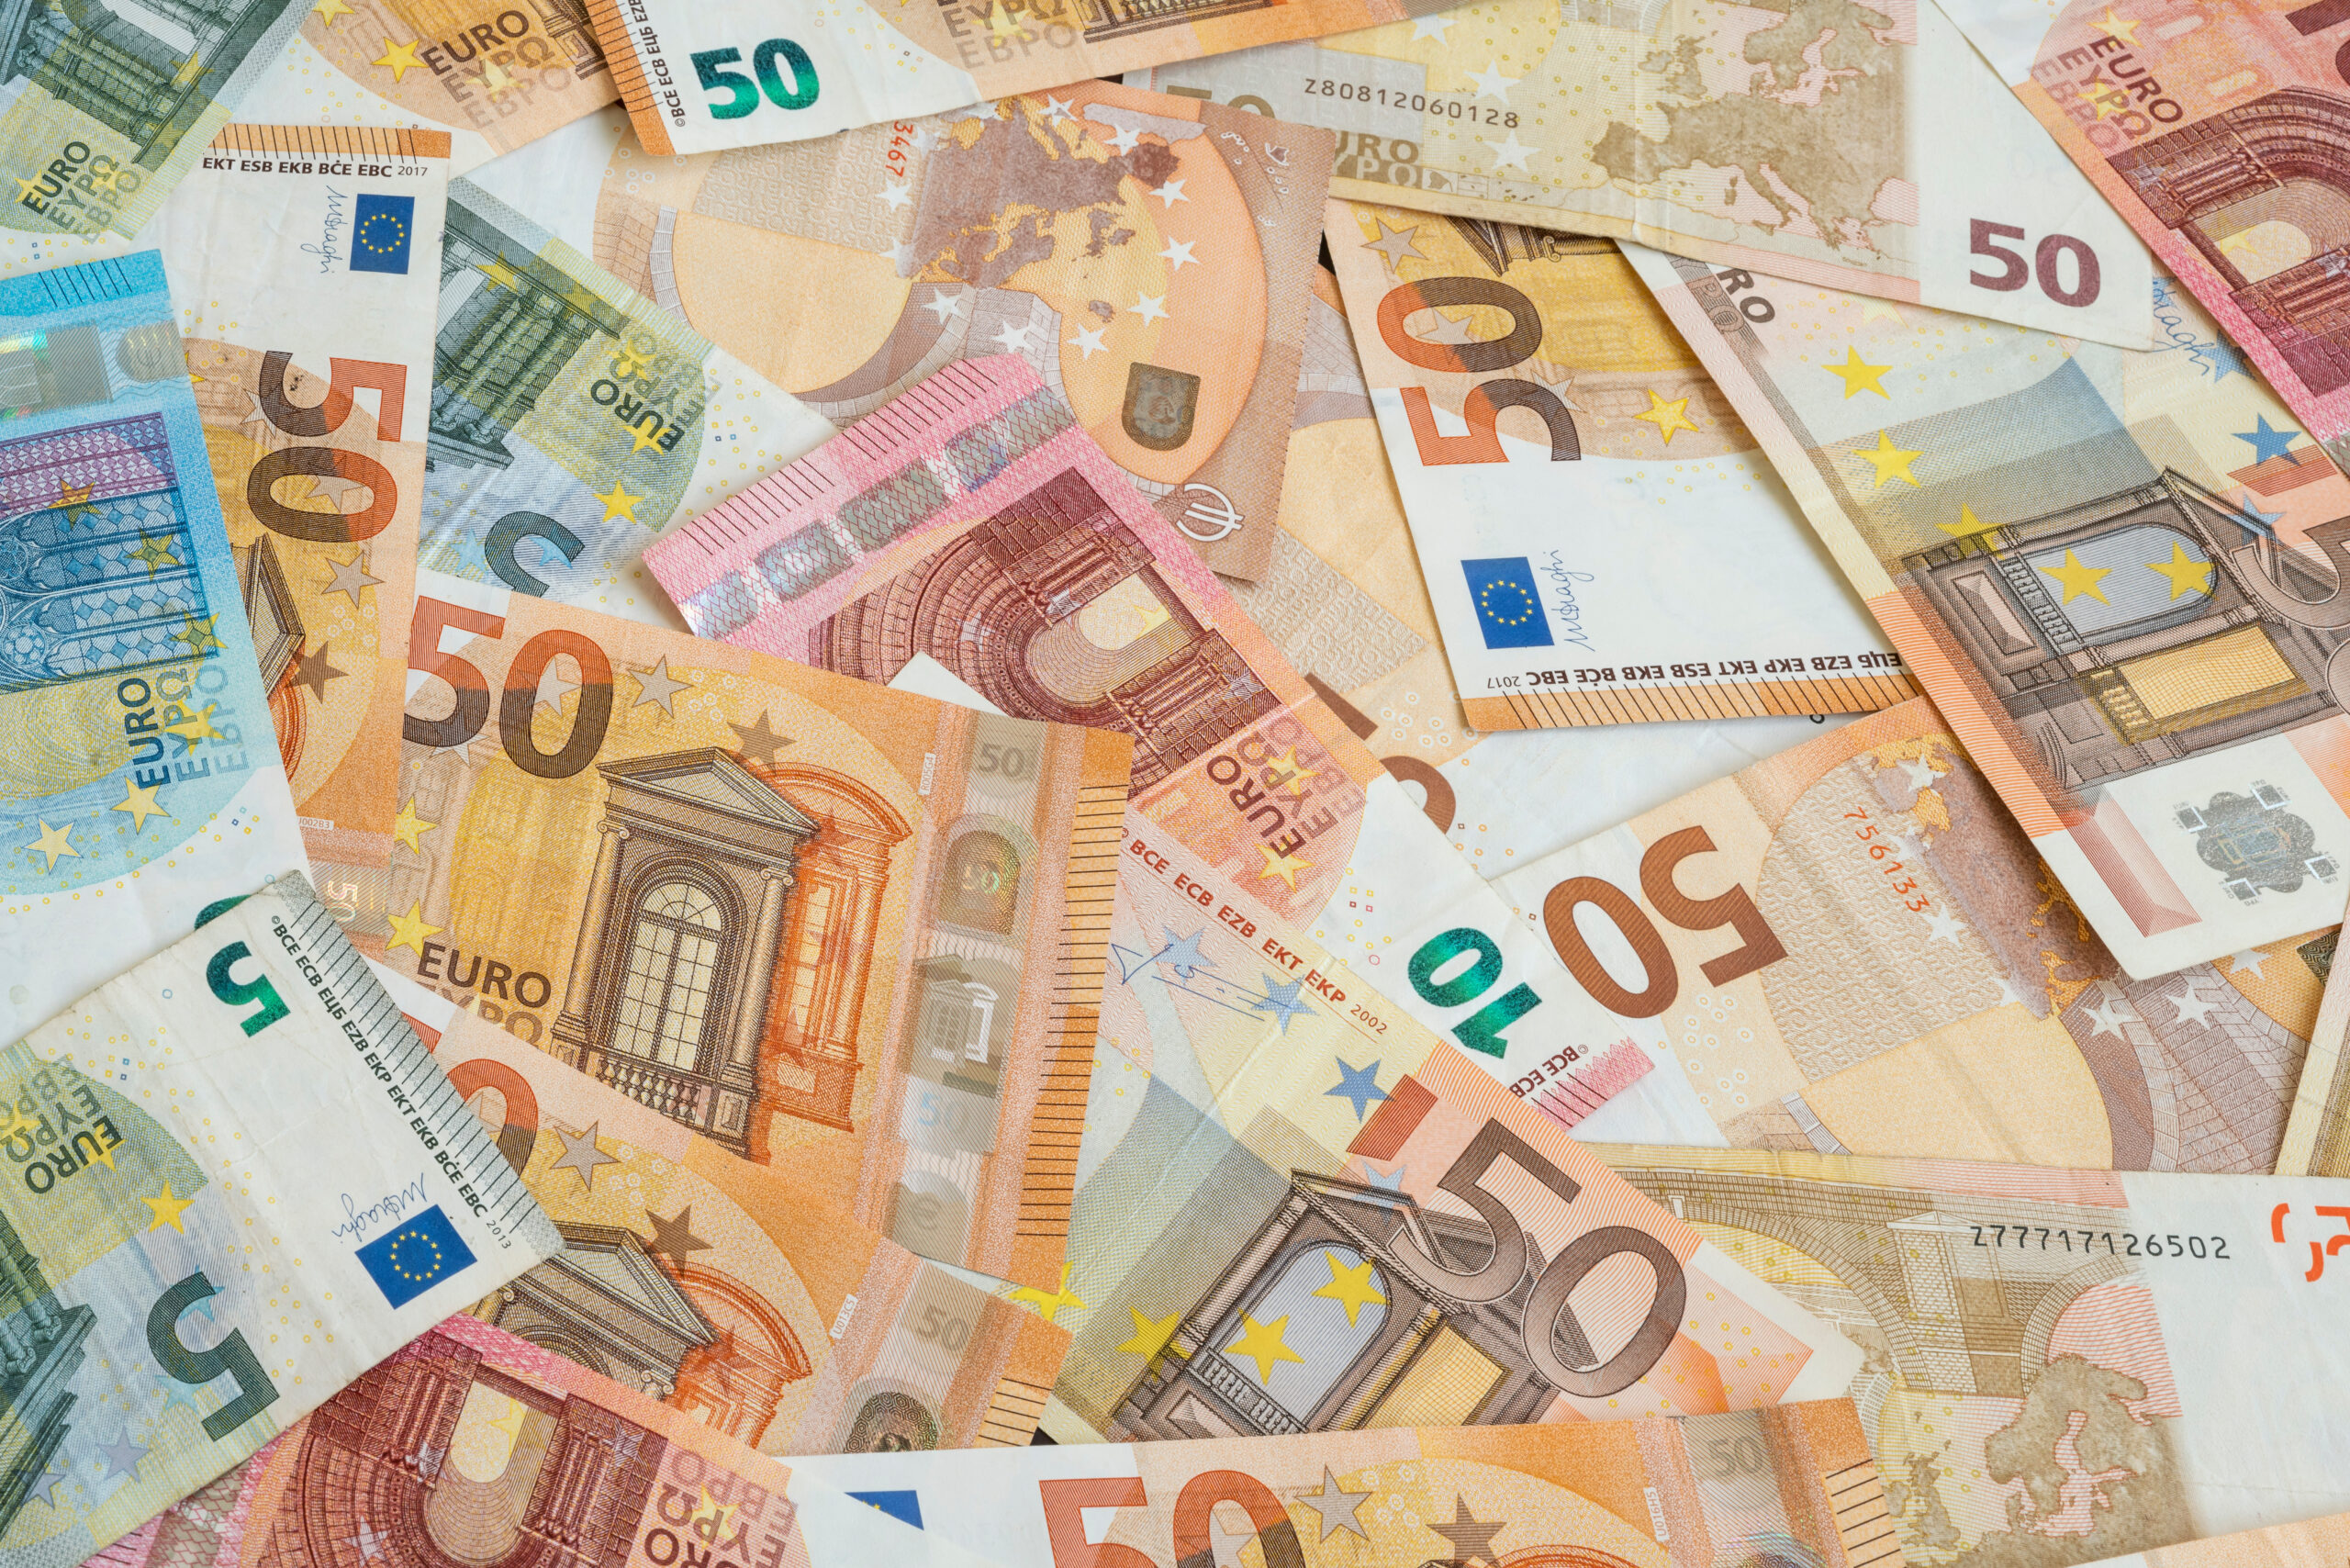 Sapevi che alcune banconote sono quotate a 3 milioni di euro? Ecco quali